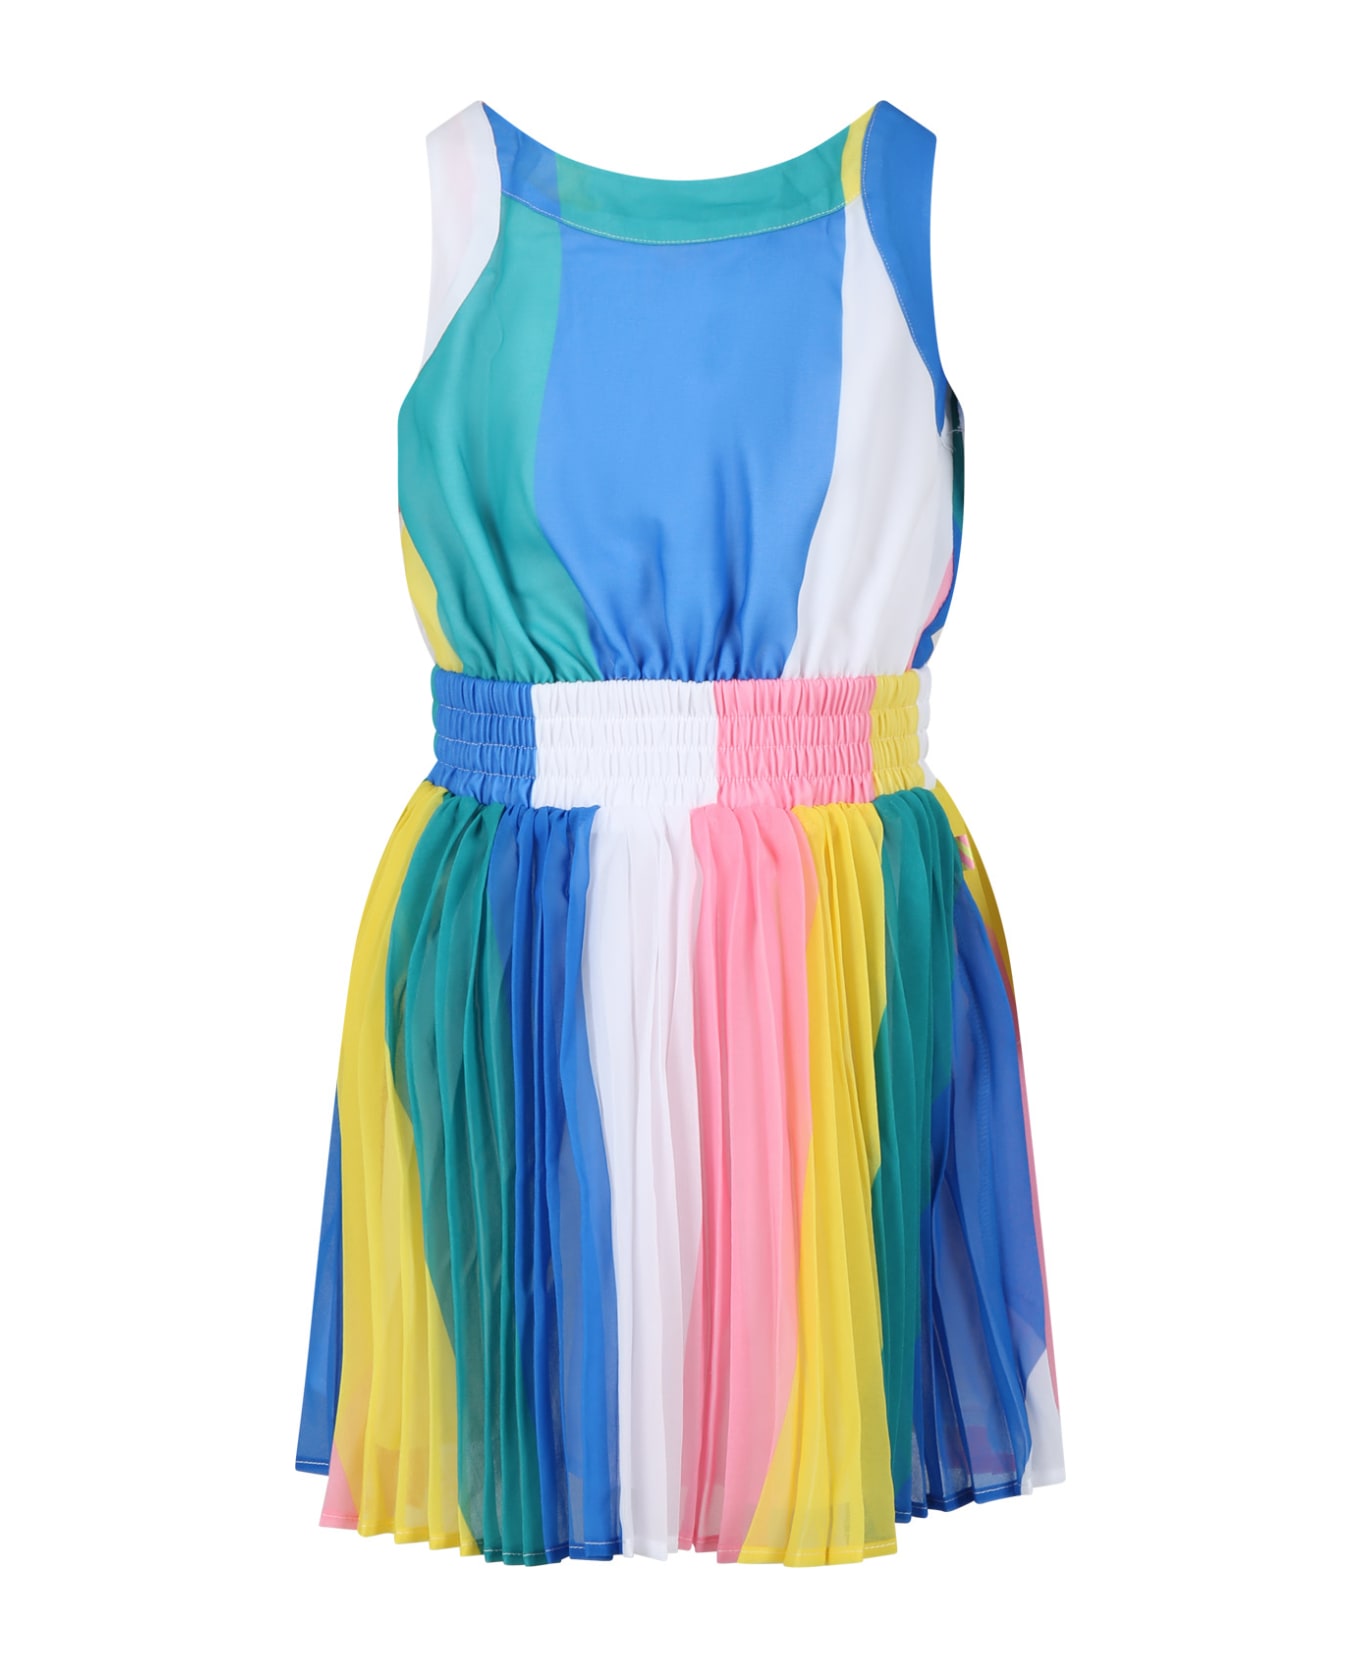 Billieblush Multicolor Dress For Girl With Multicolor Stripes - Multicolor